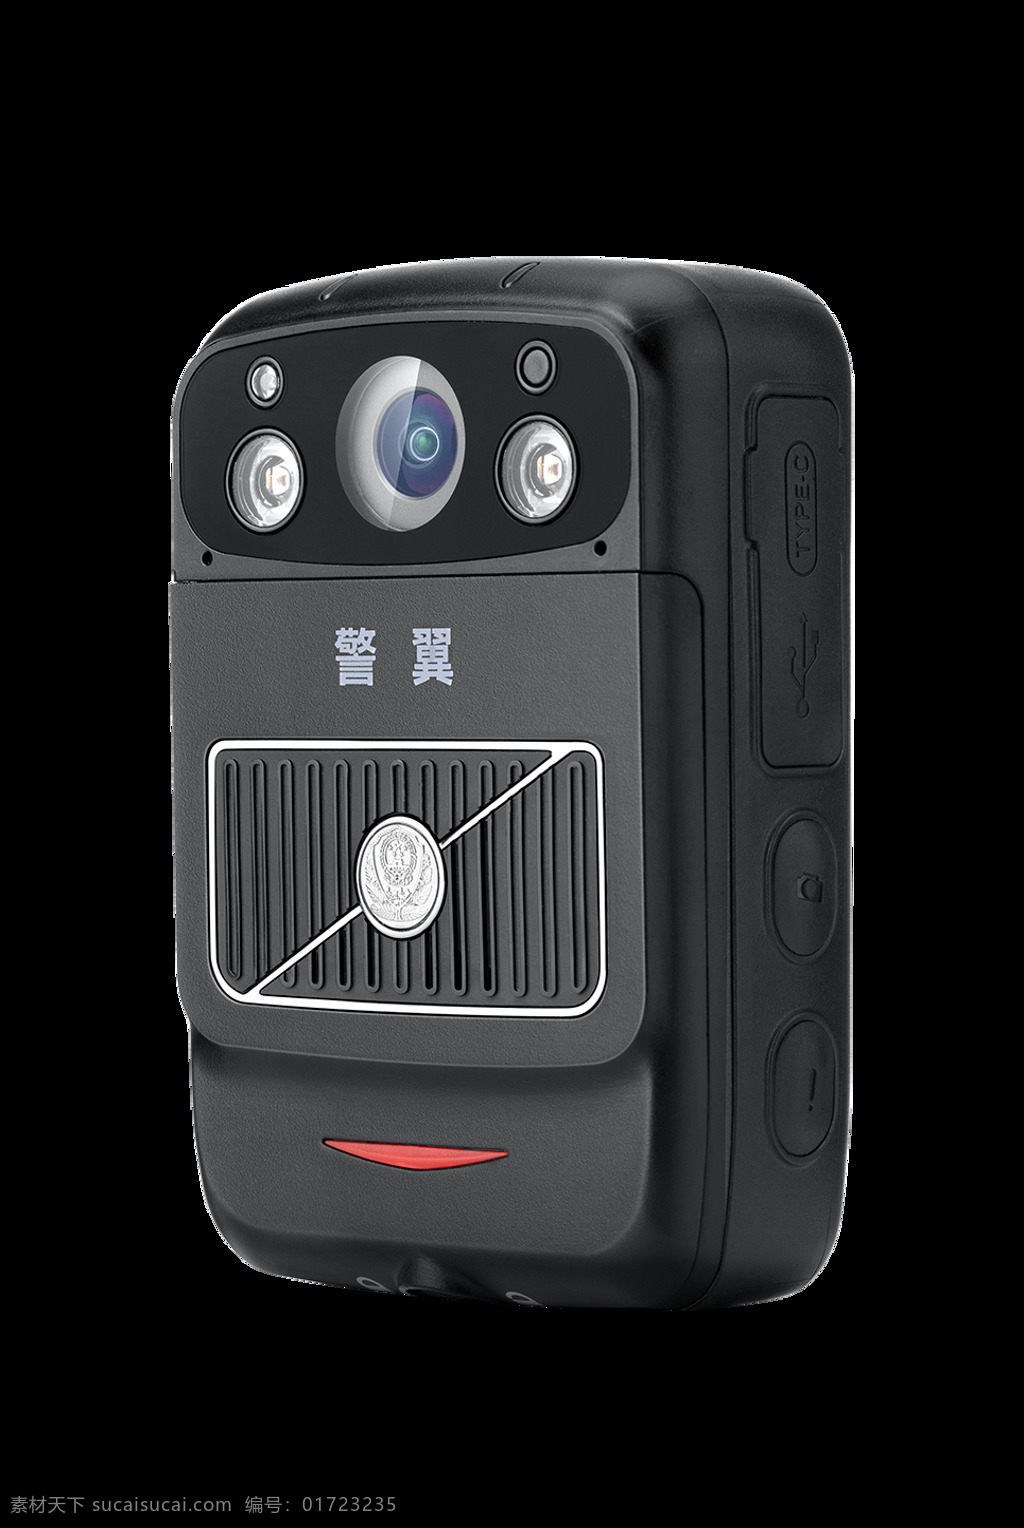 警 翼 执法 记录仪 g6 警用装备 执法记录仪 执法装备 执勤 摄像机 摄录仪 更小 更强 更智能 3d设计 3d作品